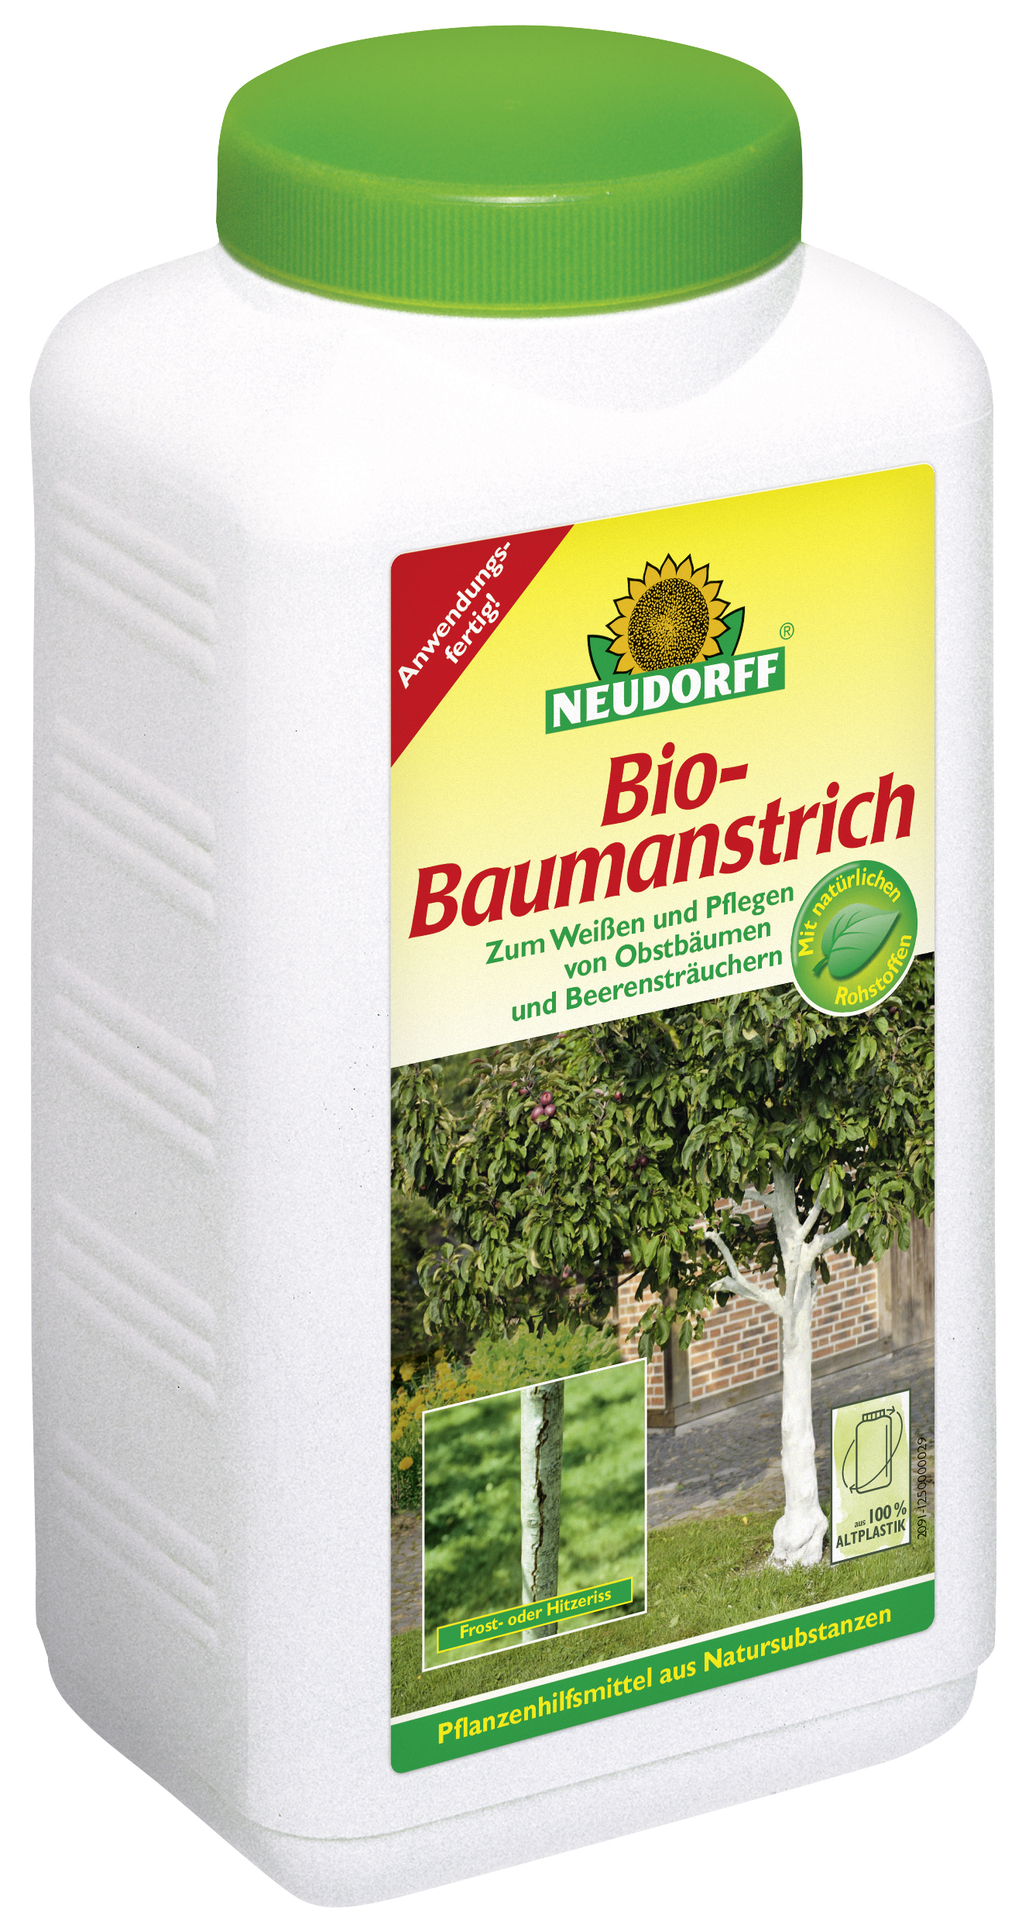 Neudorff Bio Baumanstrich 2 l